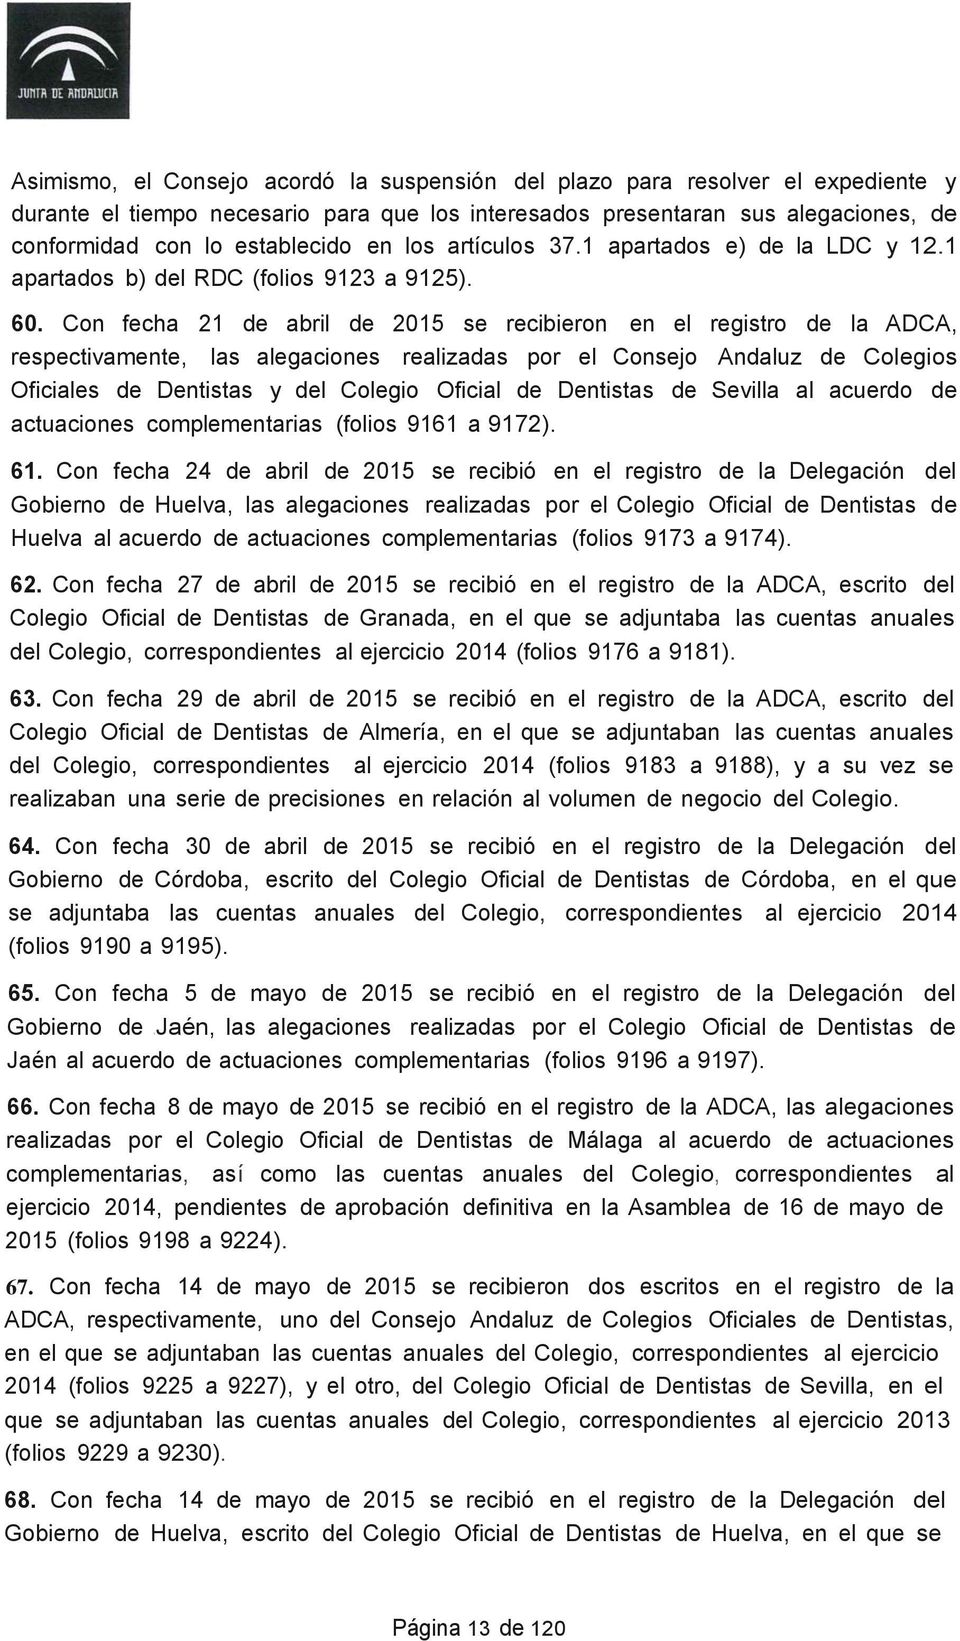 Con fecha 21 de abril de 2015 se recibieron en el registro de la ADCA, respectivamente, las alegaciones realizadas por el Consejo Andaluz de Colegios Oficiales de Dentistas y del Colegio Oficial de